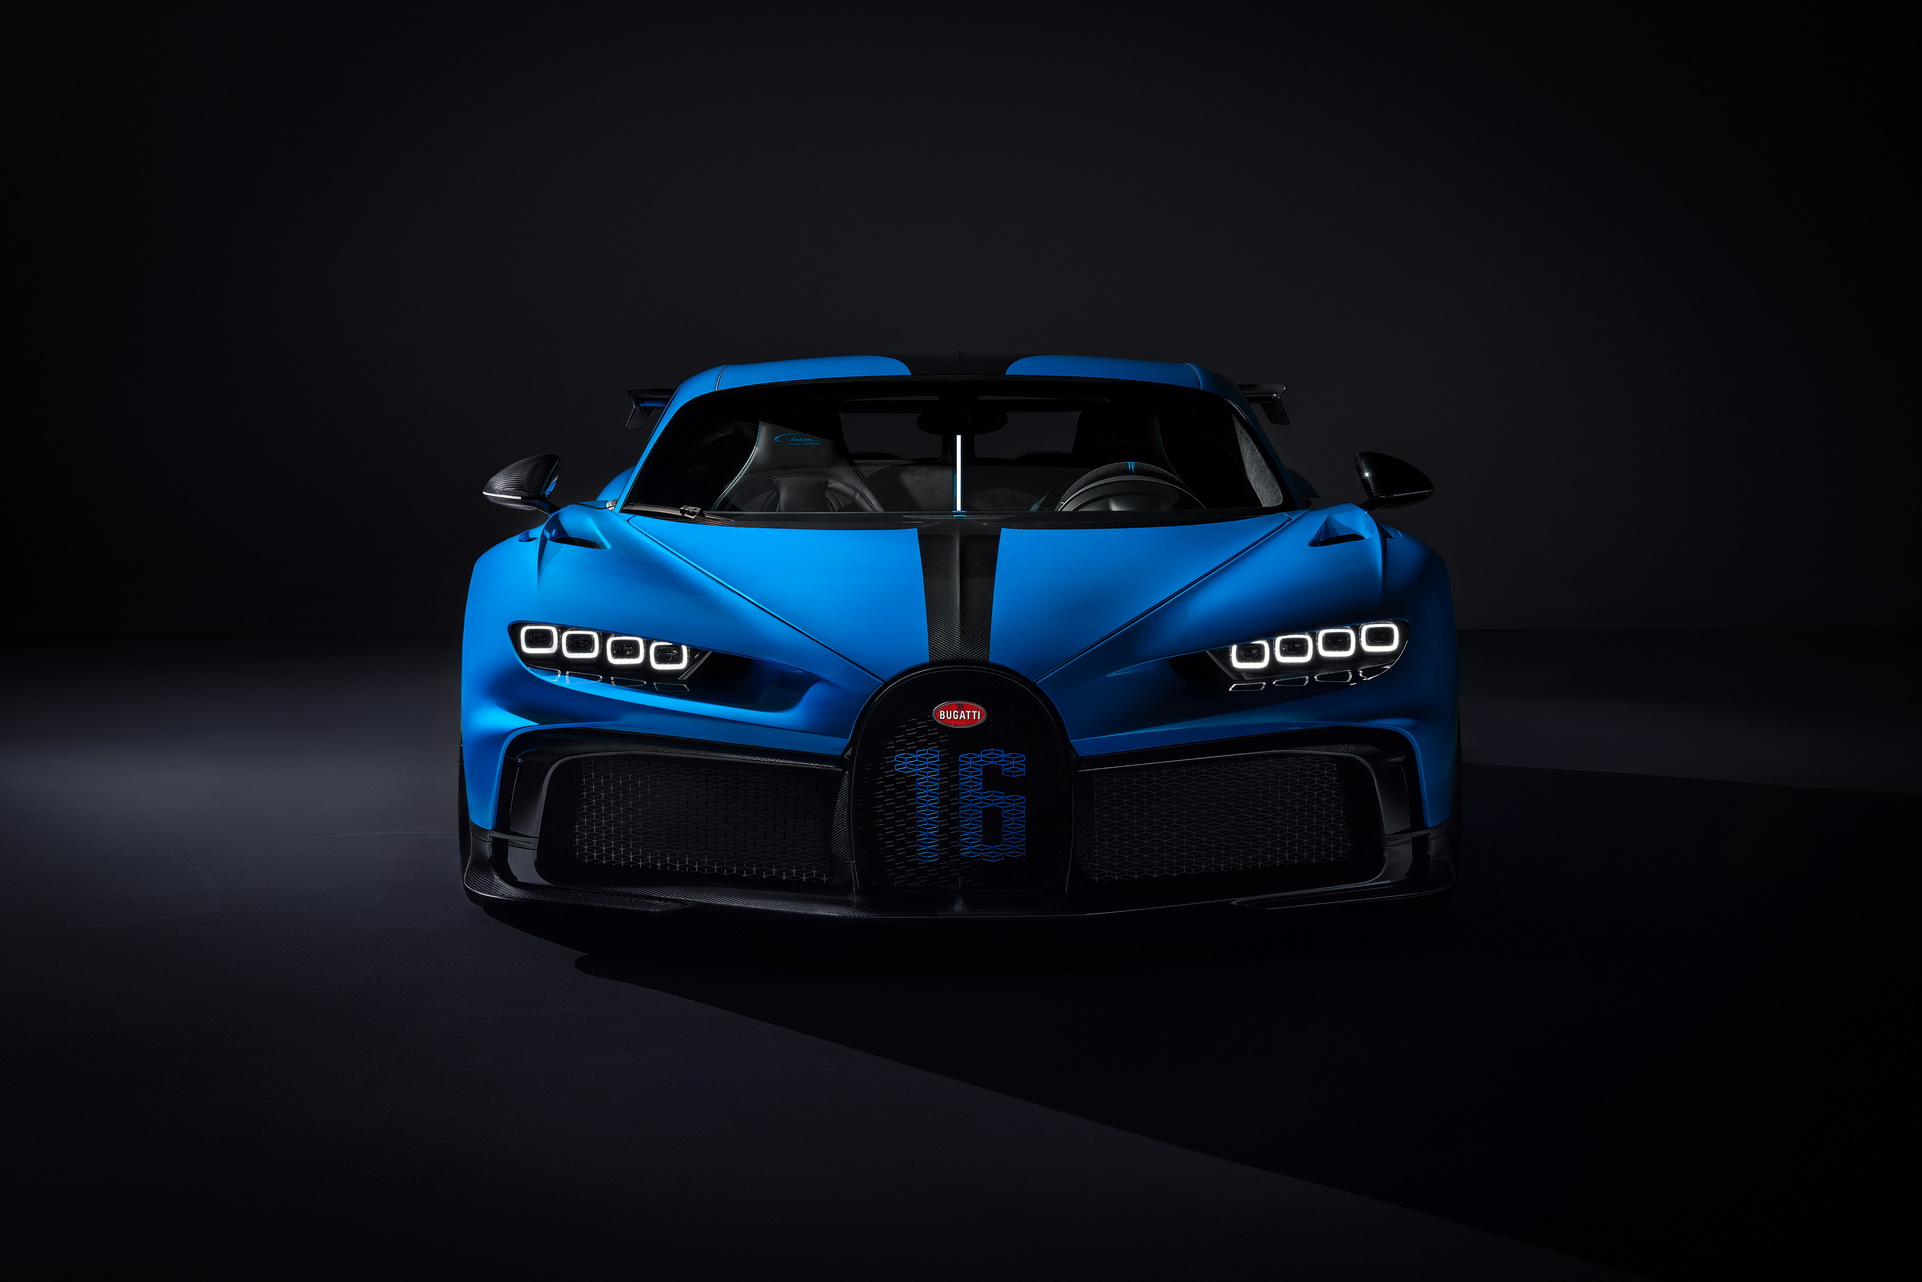 Bugatti Chiron Pur Sport: Với tốc độ vô cùng ấn tượng, thiết kế thể thao đầy mạnh mẽ, chiếc xe siêu sang Bugatti Chiron Pur Sport sẽ làm cho bạn trót mê mẩn. Với động cơ và công nghệ hàng đầu, chiếc xe này thực sự đáng để thưởng thức. Hãy cùng xem hình ảnh và cảm nhận vẻ đẹp và sự uyển chuyển của chiếc xe đẳng cấp này.